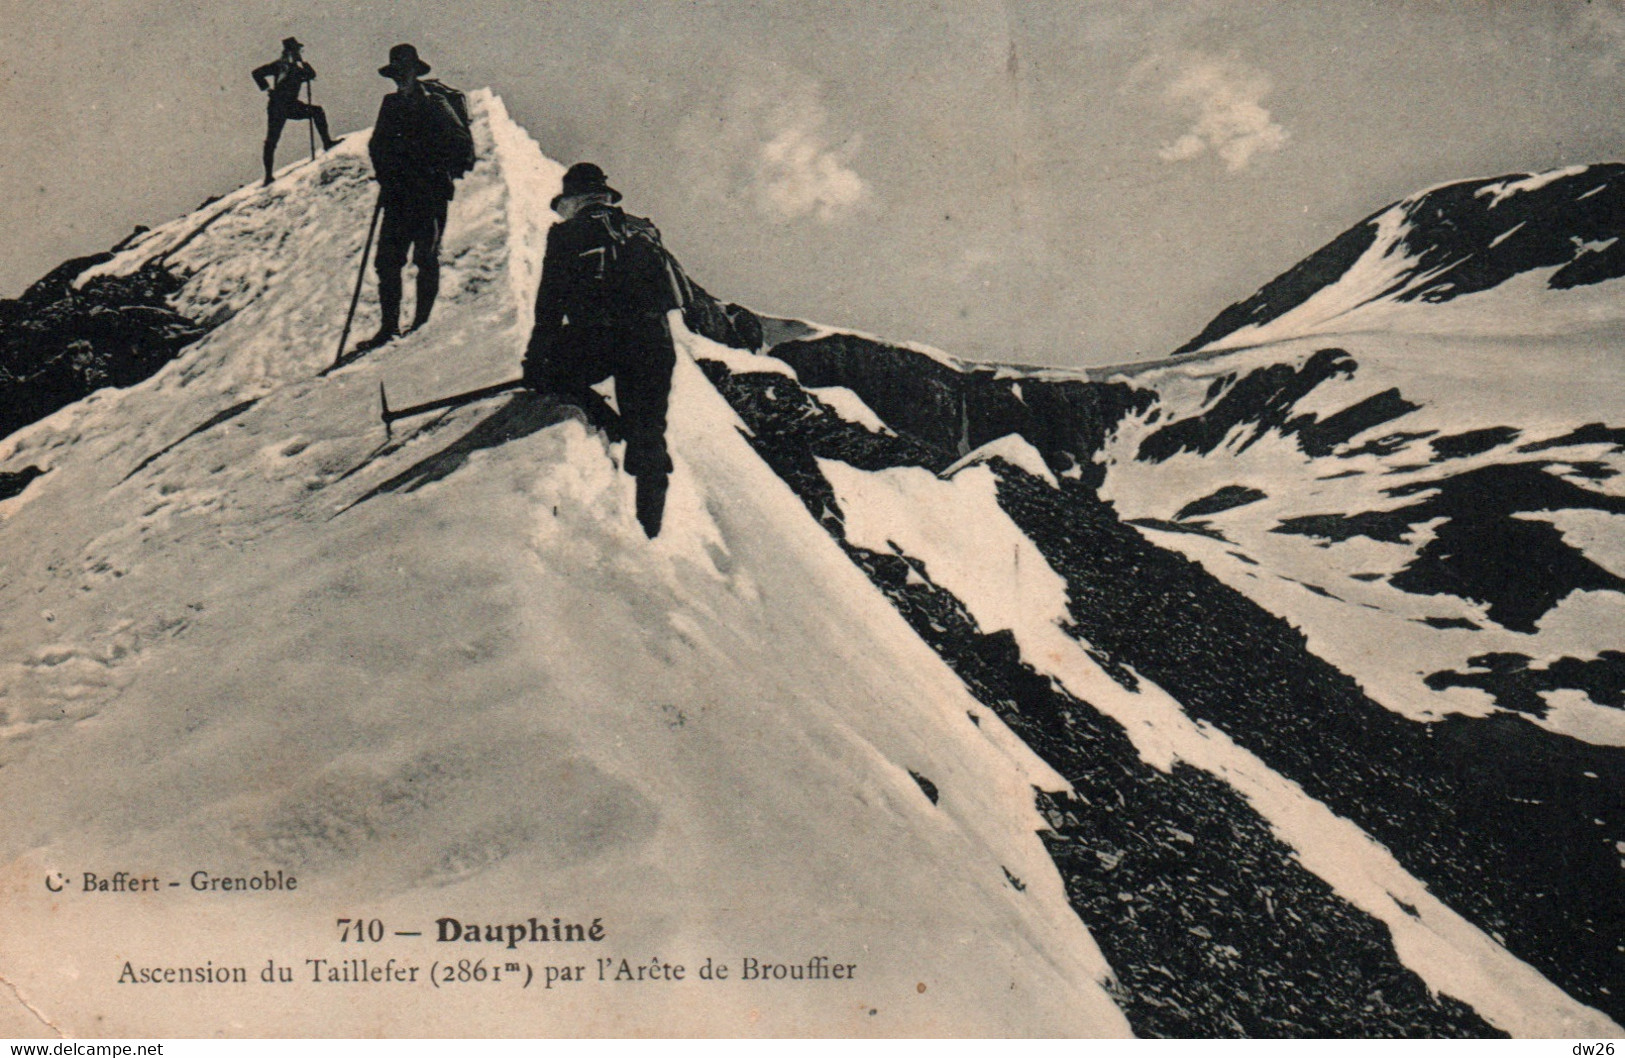 Alpinisme Dauphiné (Isère) Ascension Du Taillefer Par L'Arête De Brouffier - Edition C. Baffert - Carte N° 710 - Alpinismus, Bergsteigen